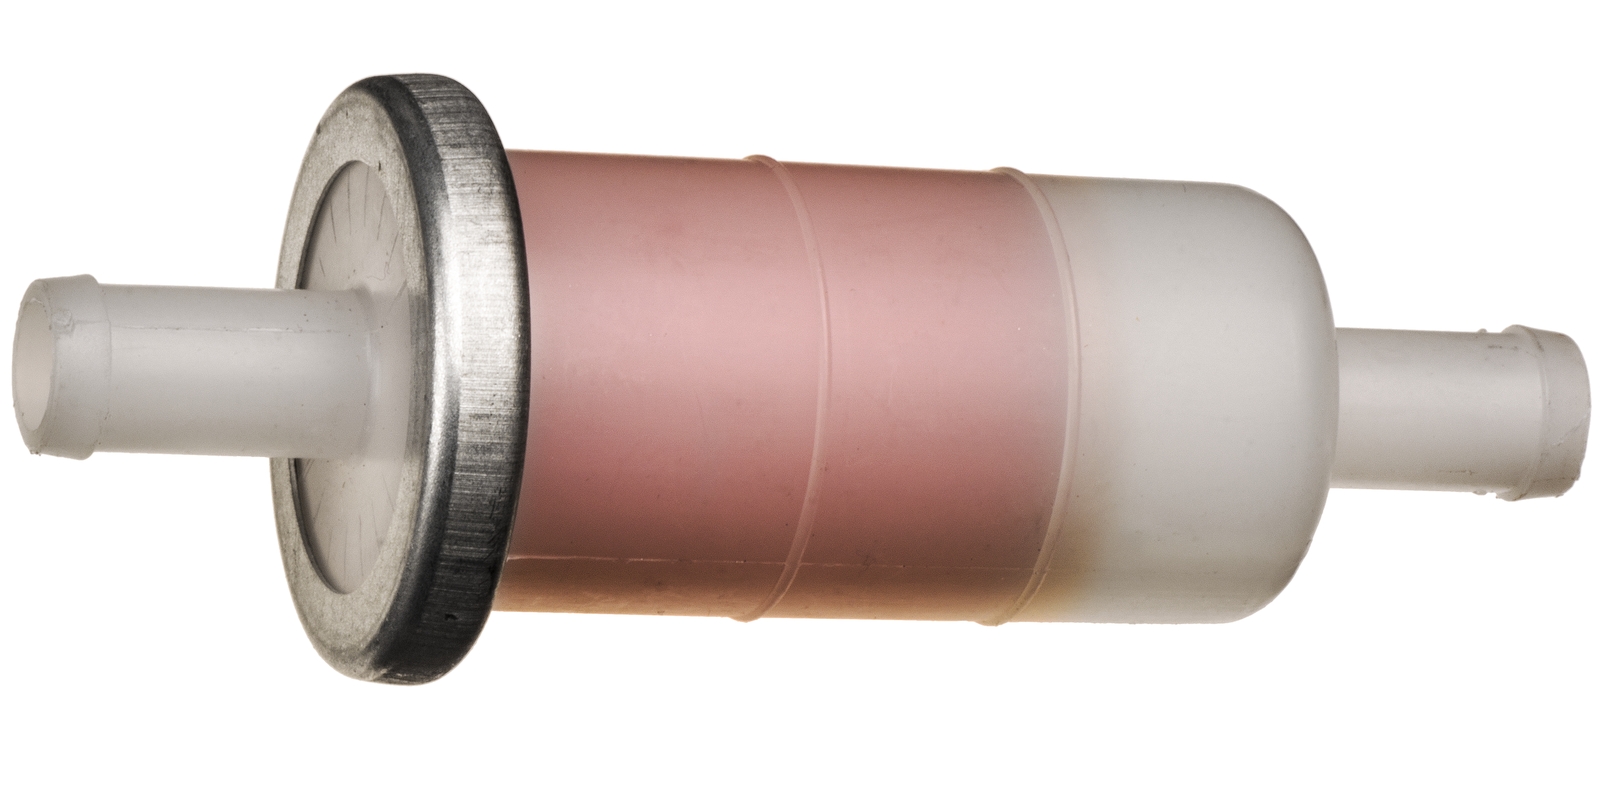 Obrázek produktu palivový filtr s papírovou vložkou, Q-TECH (pro vnitřní průměr hadice 8 mm) MFU-006